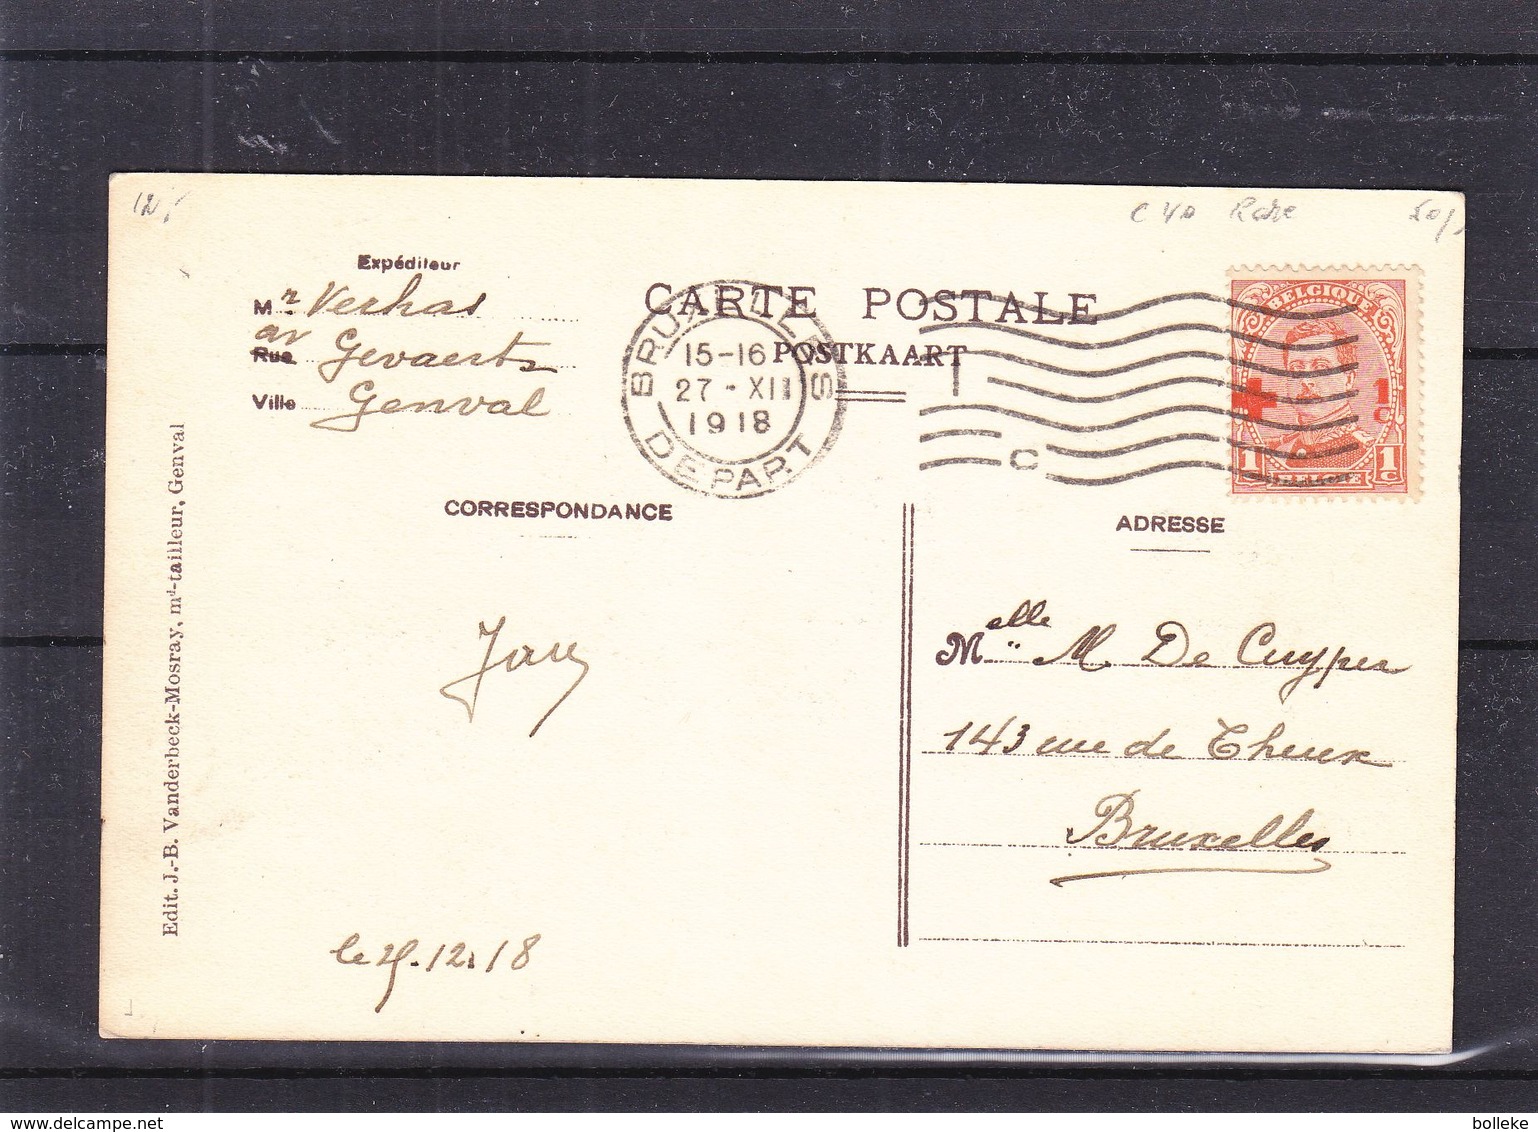 Croix Rouge - Belgique - Carte Postale De 1918 - Oblit Bruxelles - Avec Le 1c - Rare - Valeur 40 Euros - 1918 Croix-Rouge